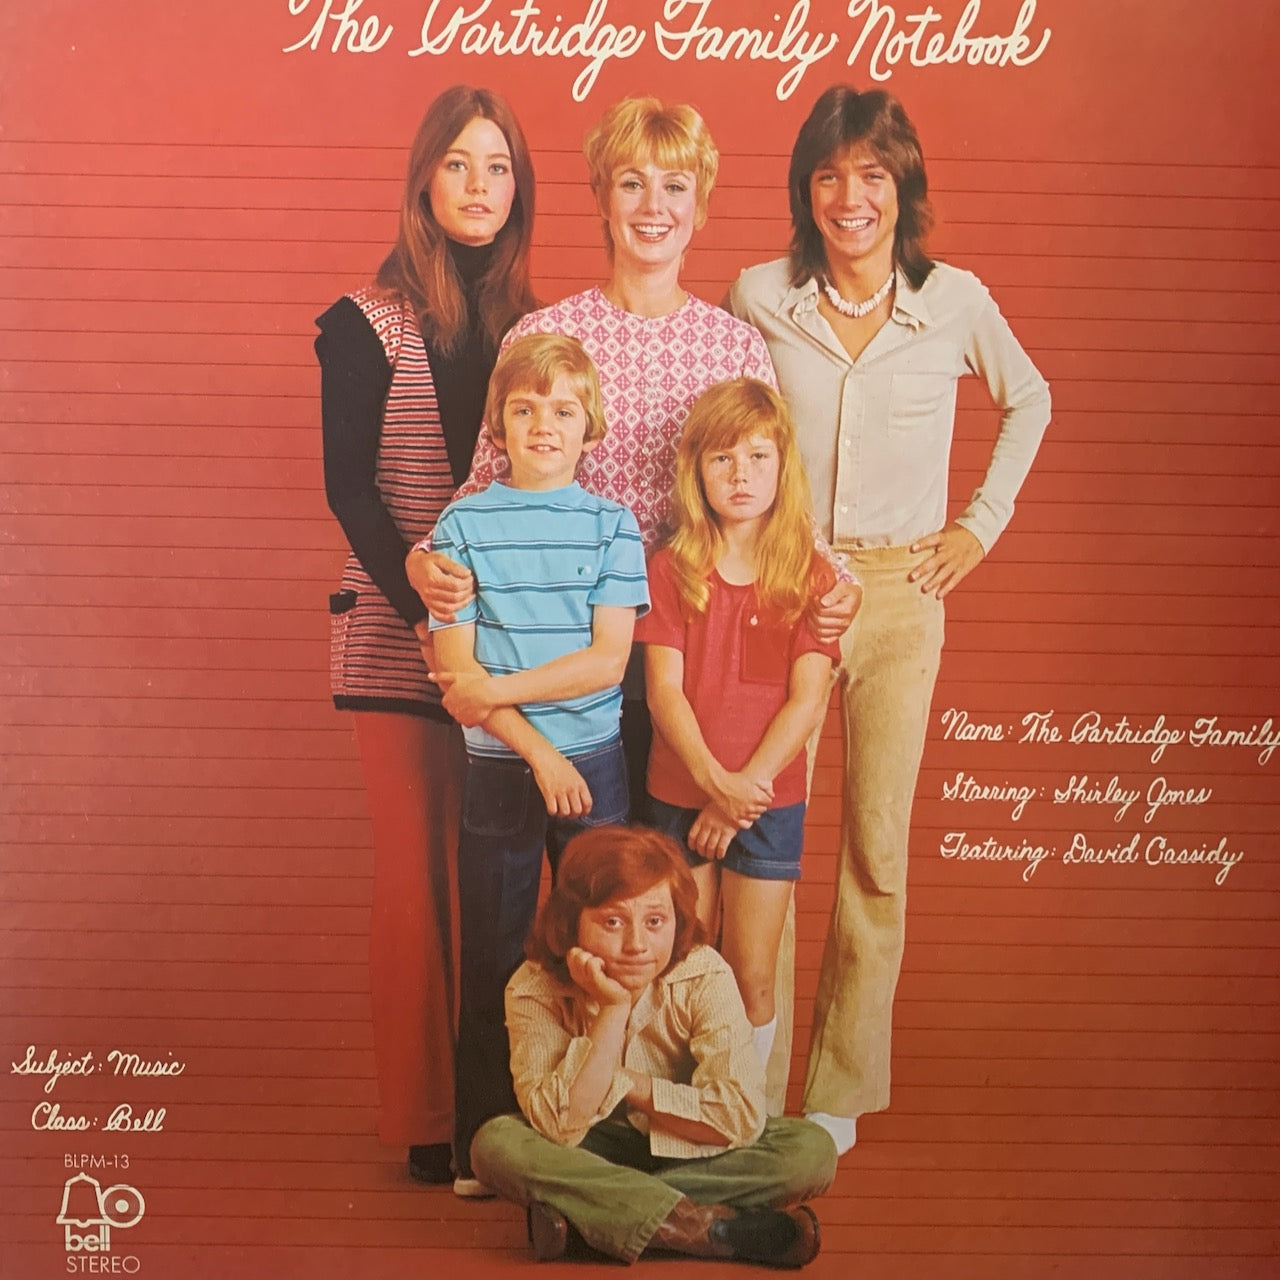 THE PARTRIDGE FAMILY STARRING SHIRLEY JONES (2) FEATURING DAVID CASSIDY - THE PARTRIDGE FAMILY NOTEBOOK    VG+/VG+ 1972